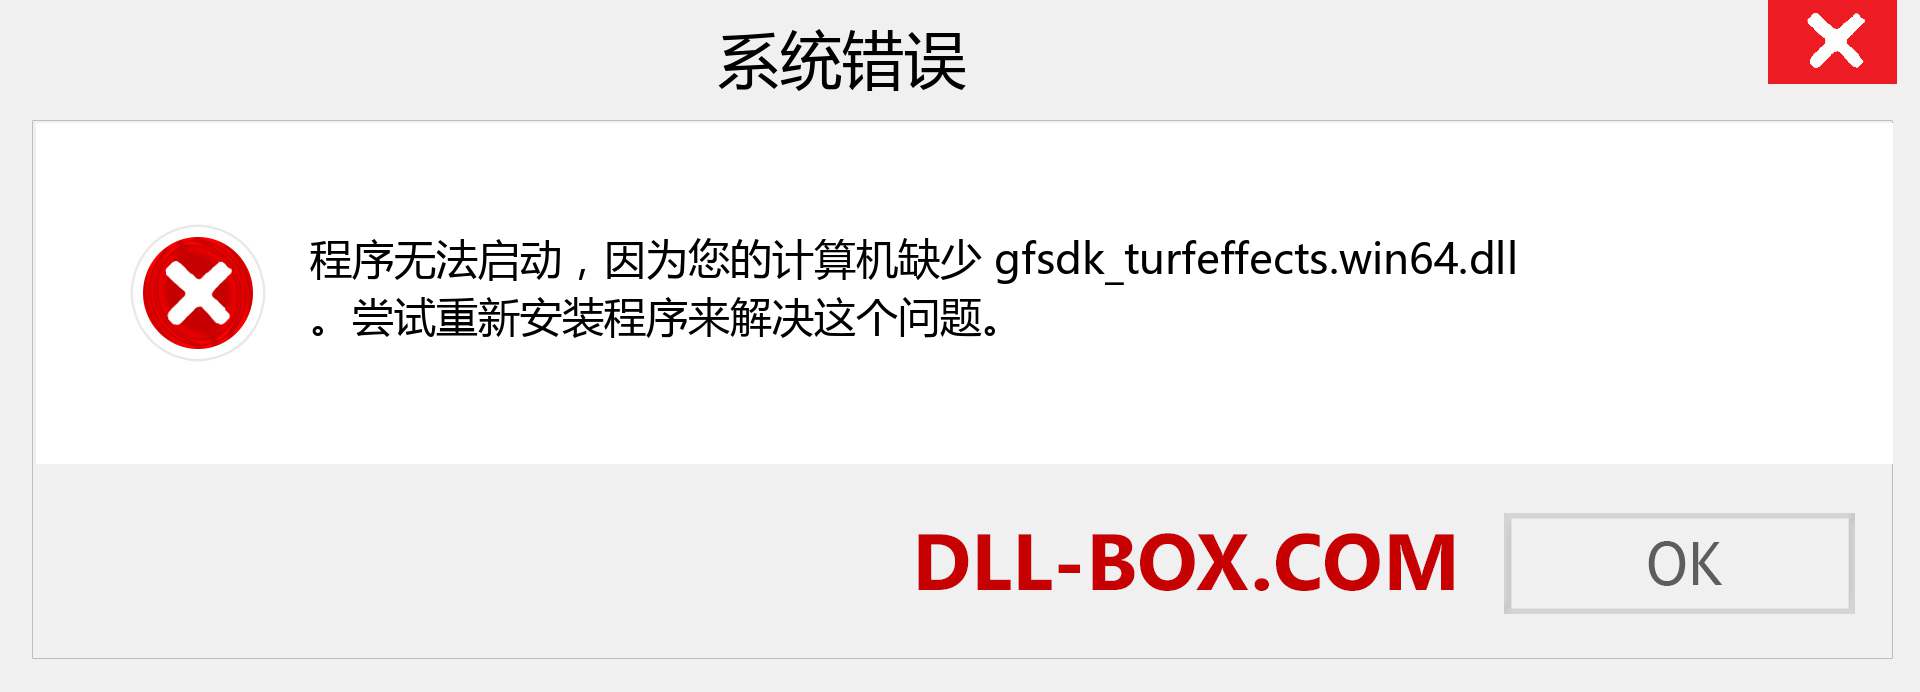 gfsdk_turfeffects.win64.dll 文件丢失？。 适用于 Windows 7、8、10 的下载 - 修复 Windows、照片、图像上的 gfsdk_turfeffects.win64 dll 丢失错误